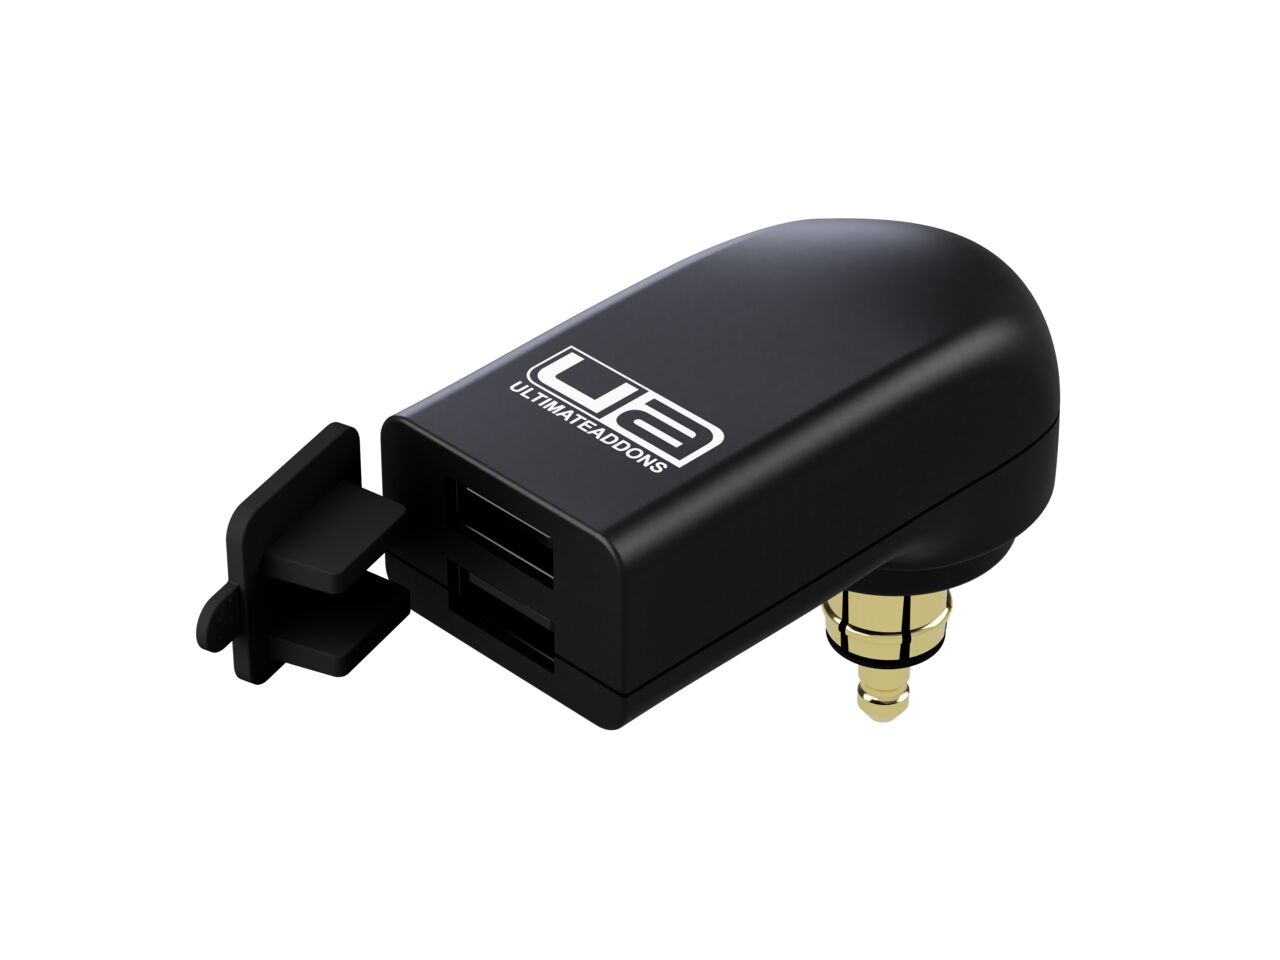 DIN Hella Plug to USB Adapter, Qidoe 30W PD3.0 USB C Socket